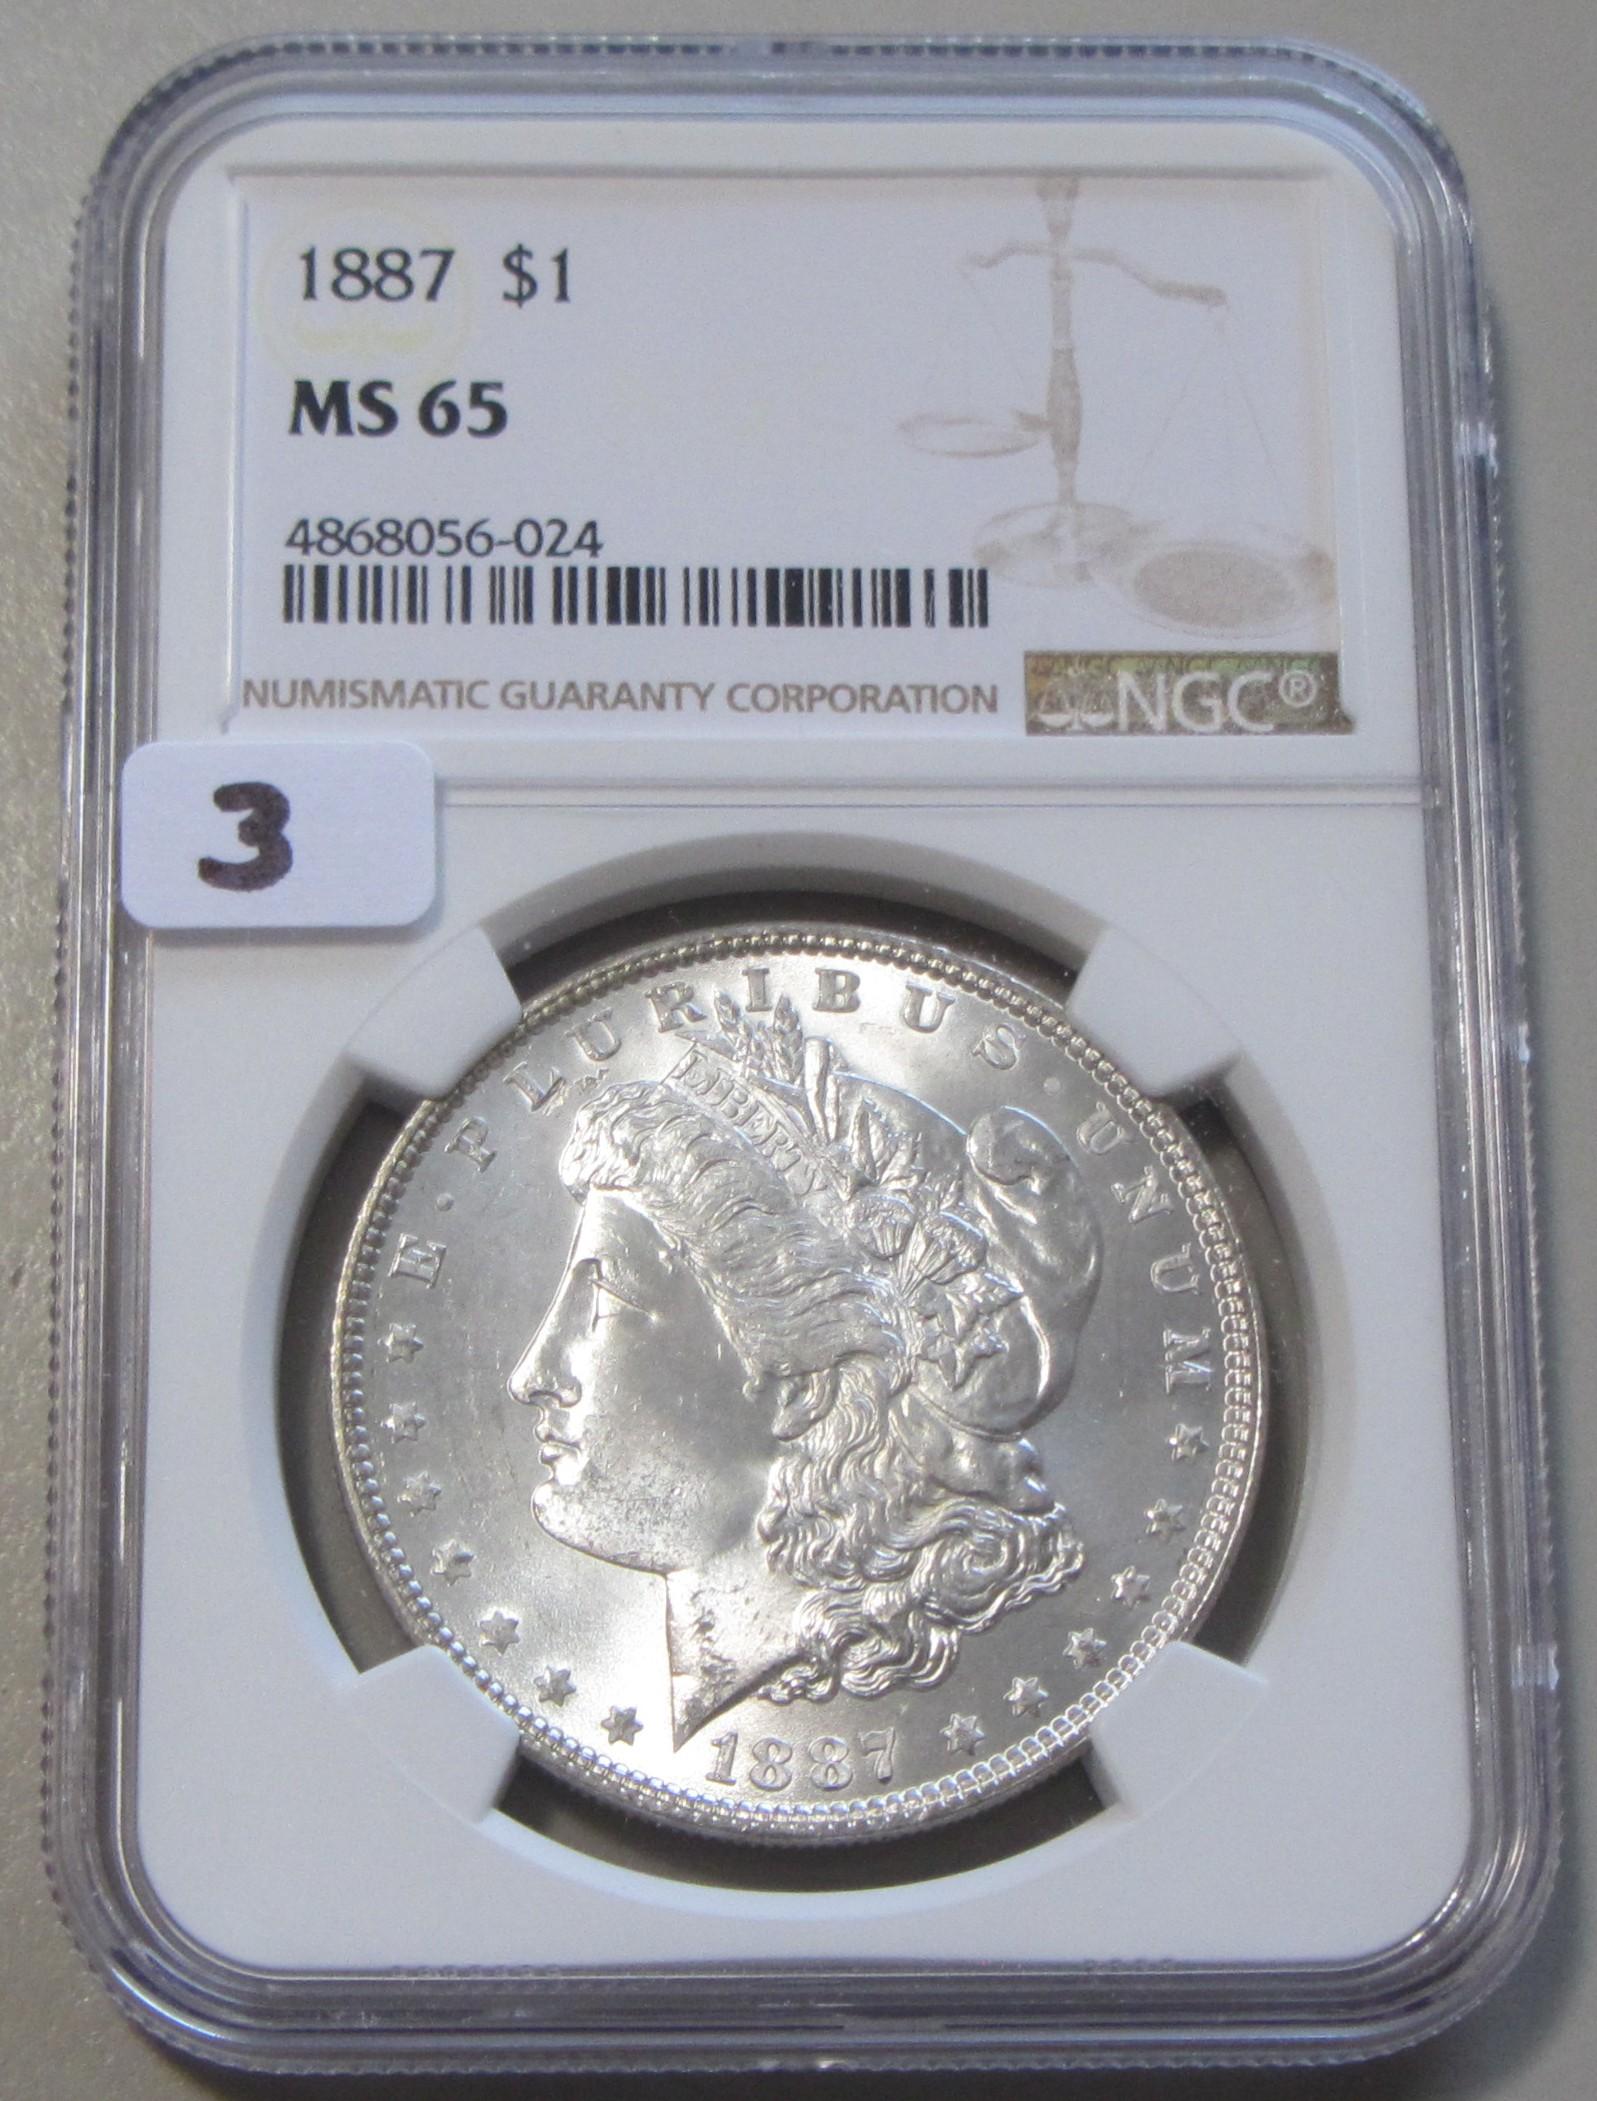 $1 1887 GEM NGC MS 65 MORGAN